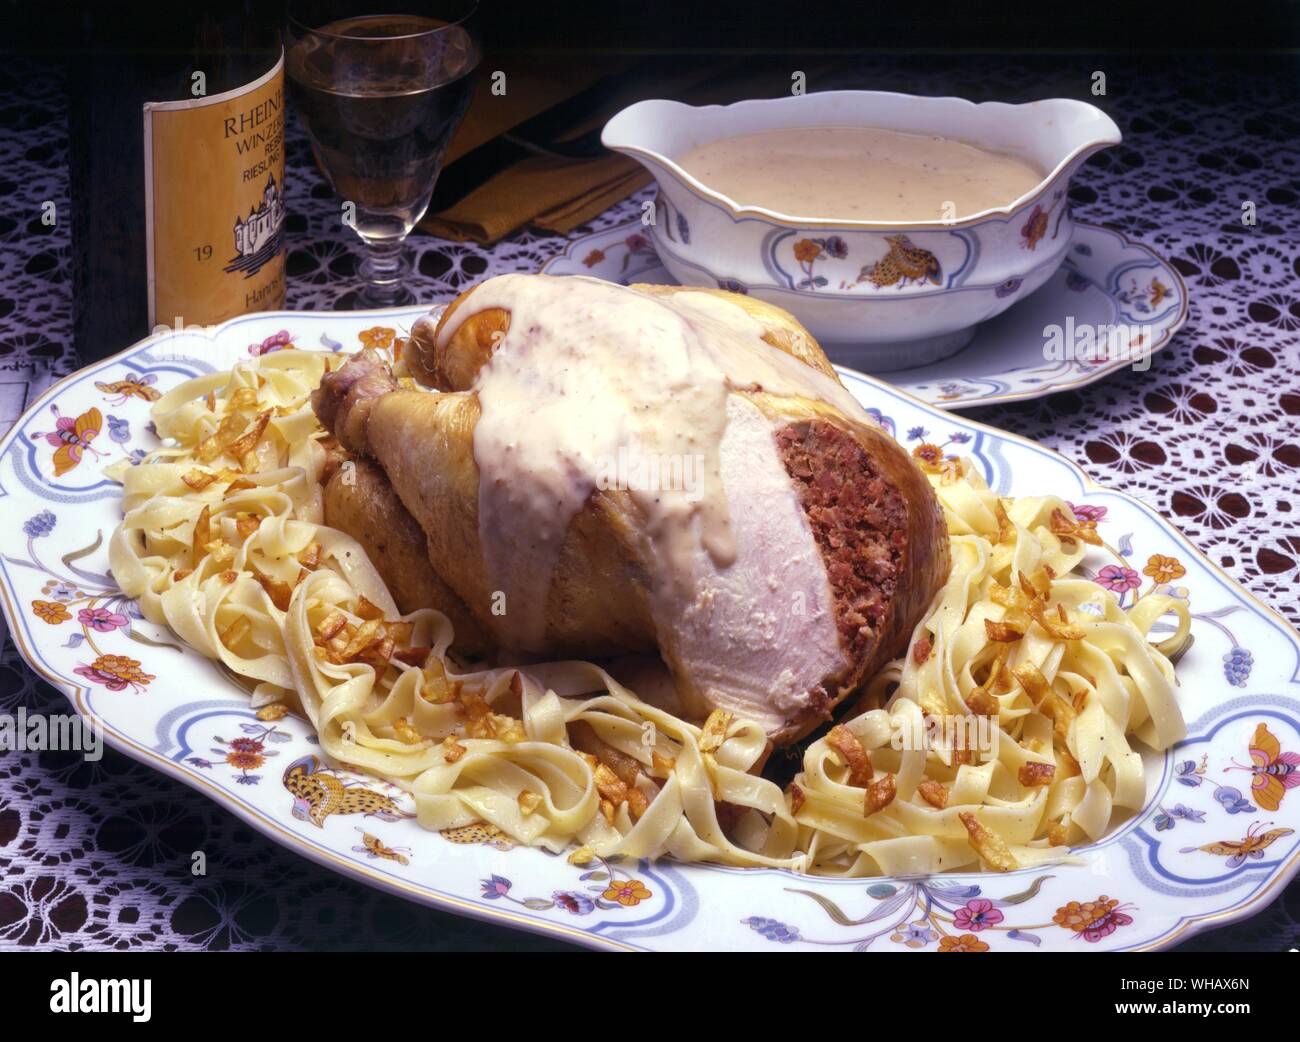 Poularde a l'alsacienne. Huhn gefüllt mit Foie gras Hühnerleber und in Weißwein und Brandy zubereitet Stockfoto